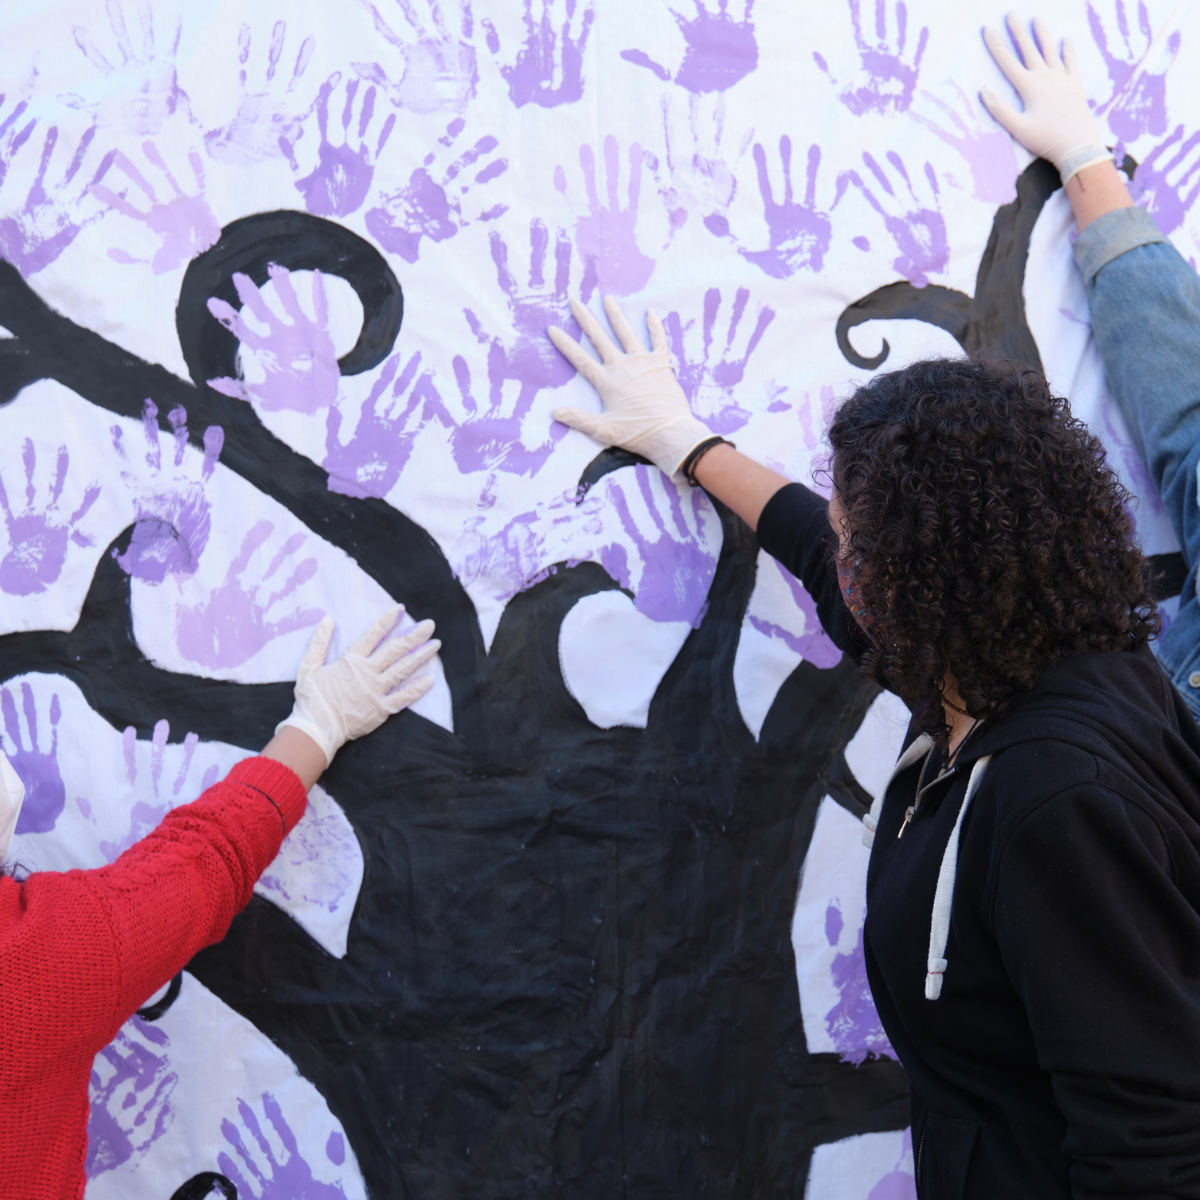 Tres mujeres participan en un mural pintando manos violetas por el Día Internacional de la Mujer